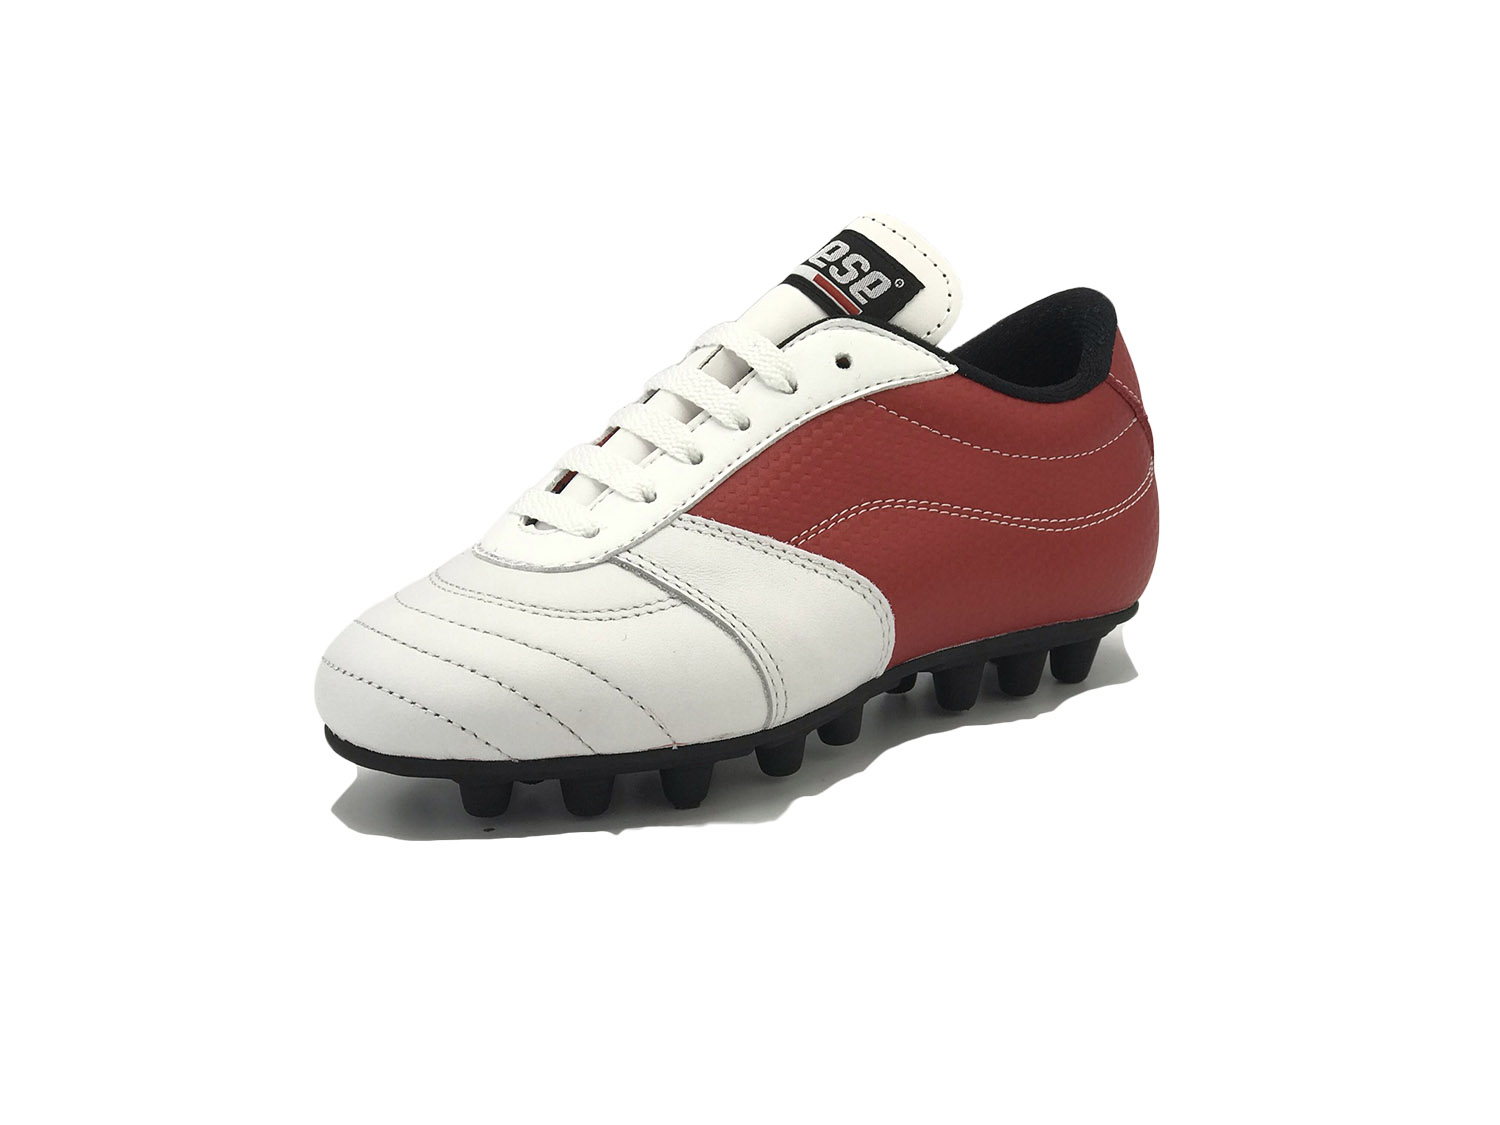 modello CLASSIC Junior Bianco Rosso - DANESE Scarpe calcio bambini artigianali